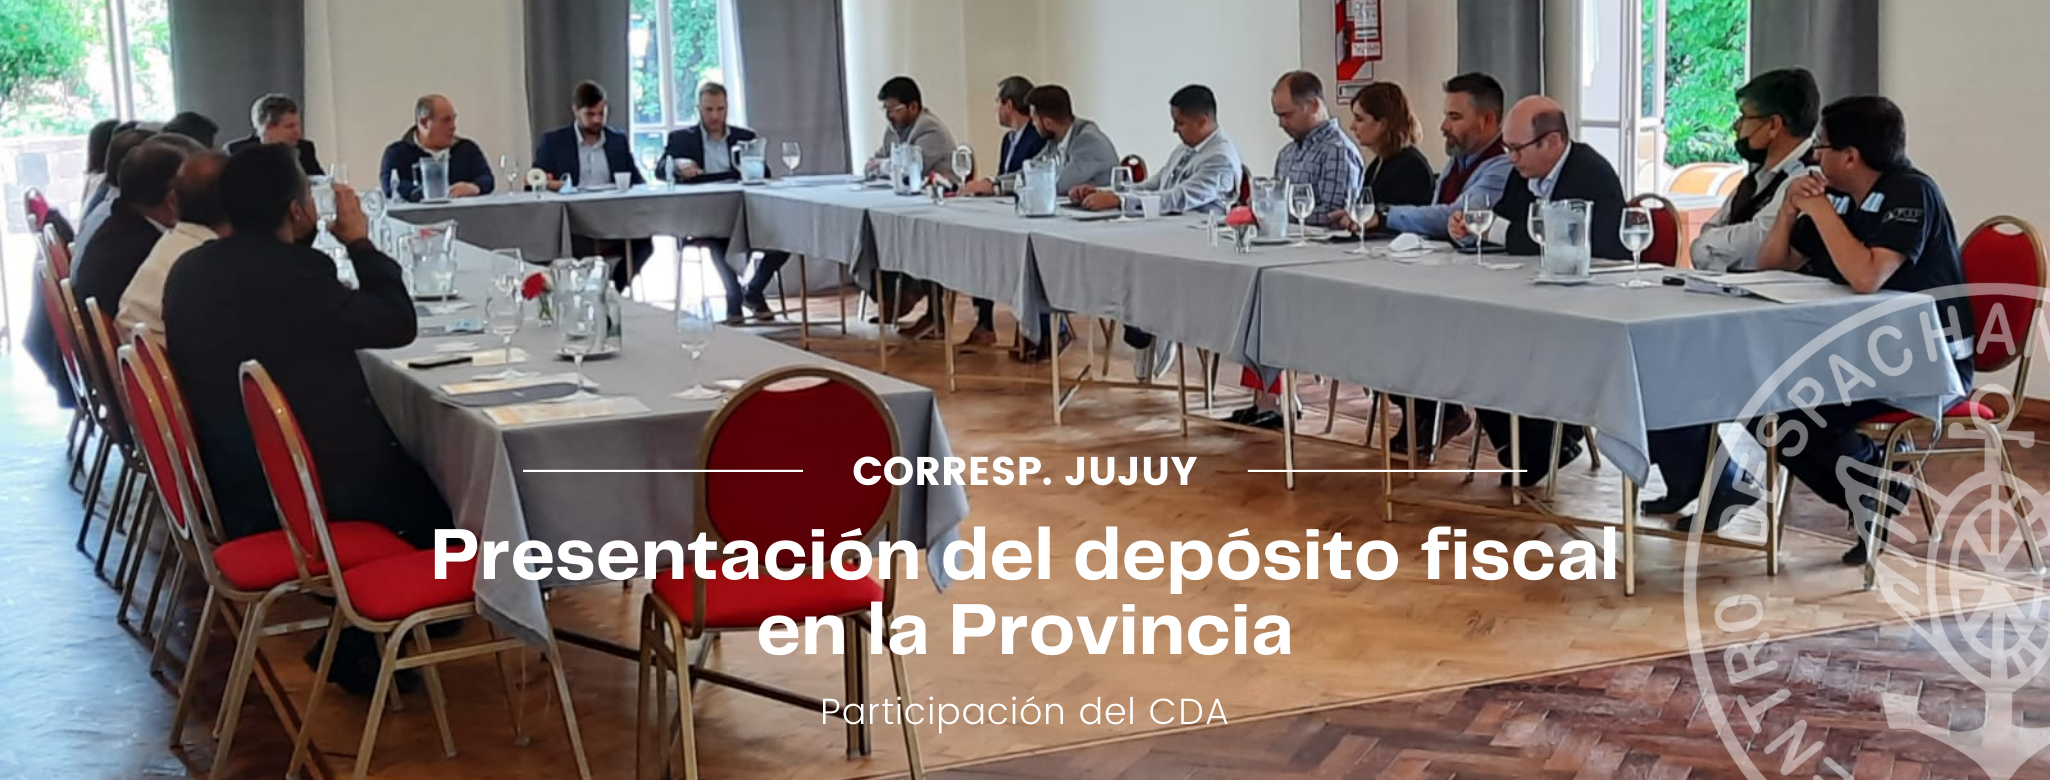 Corresponsalia Jujuy en la presentación del depósito fiscal en la Provincia